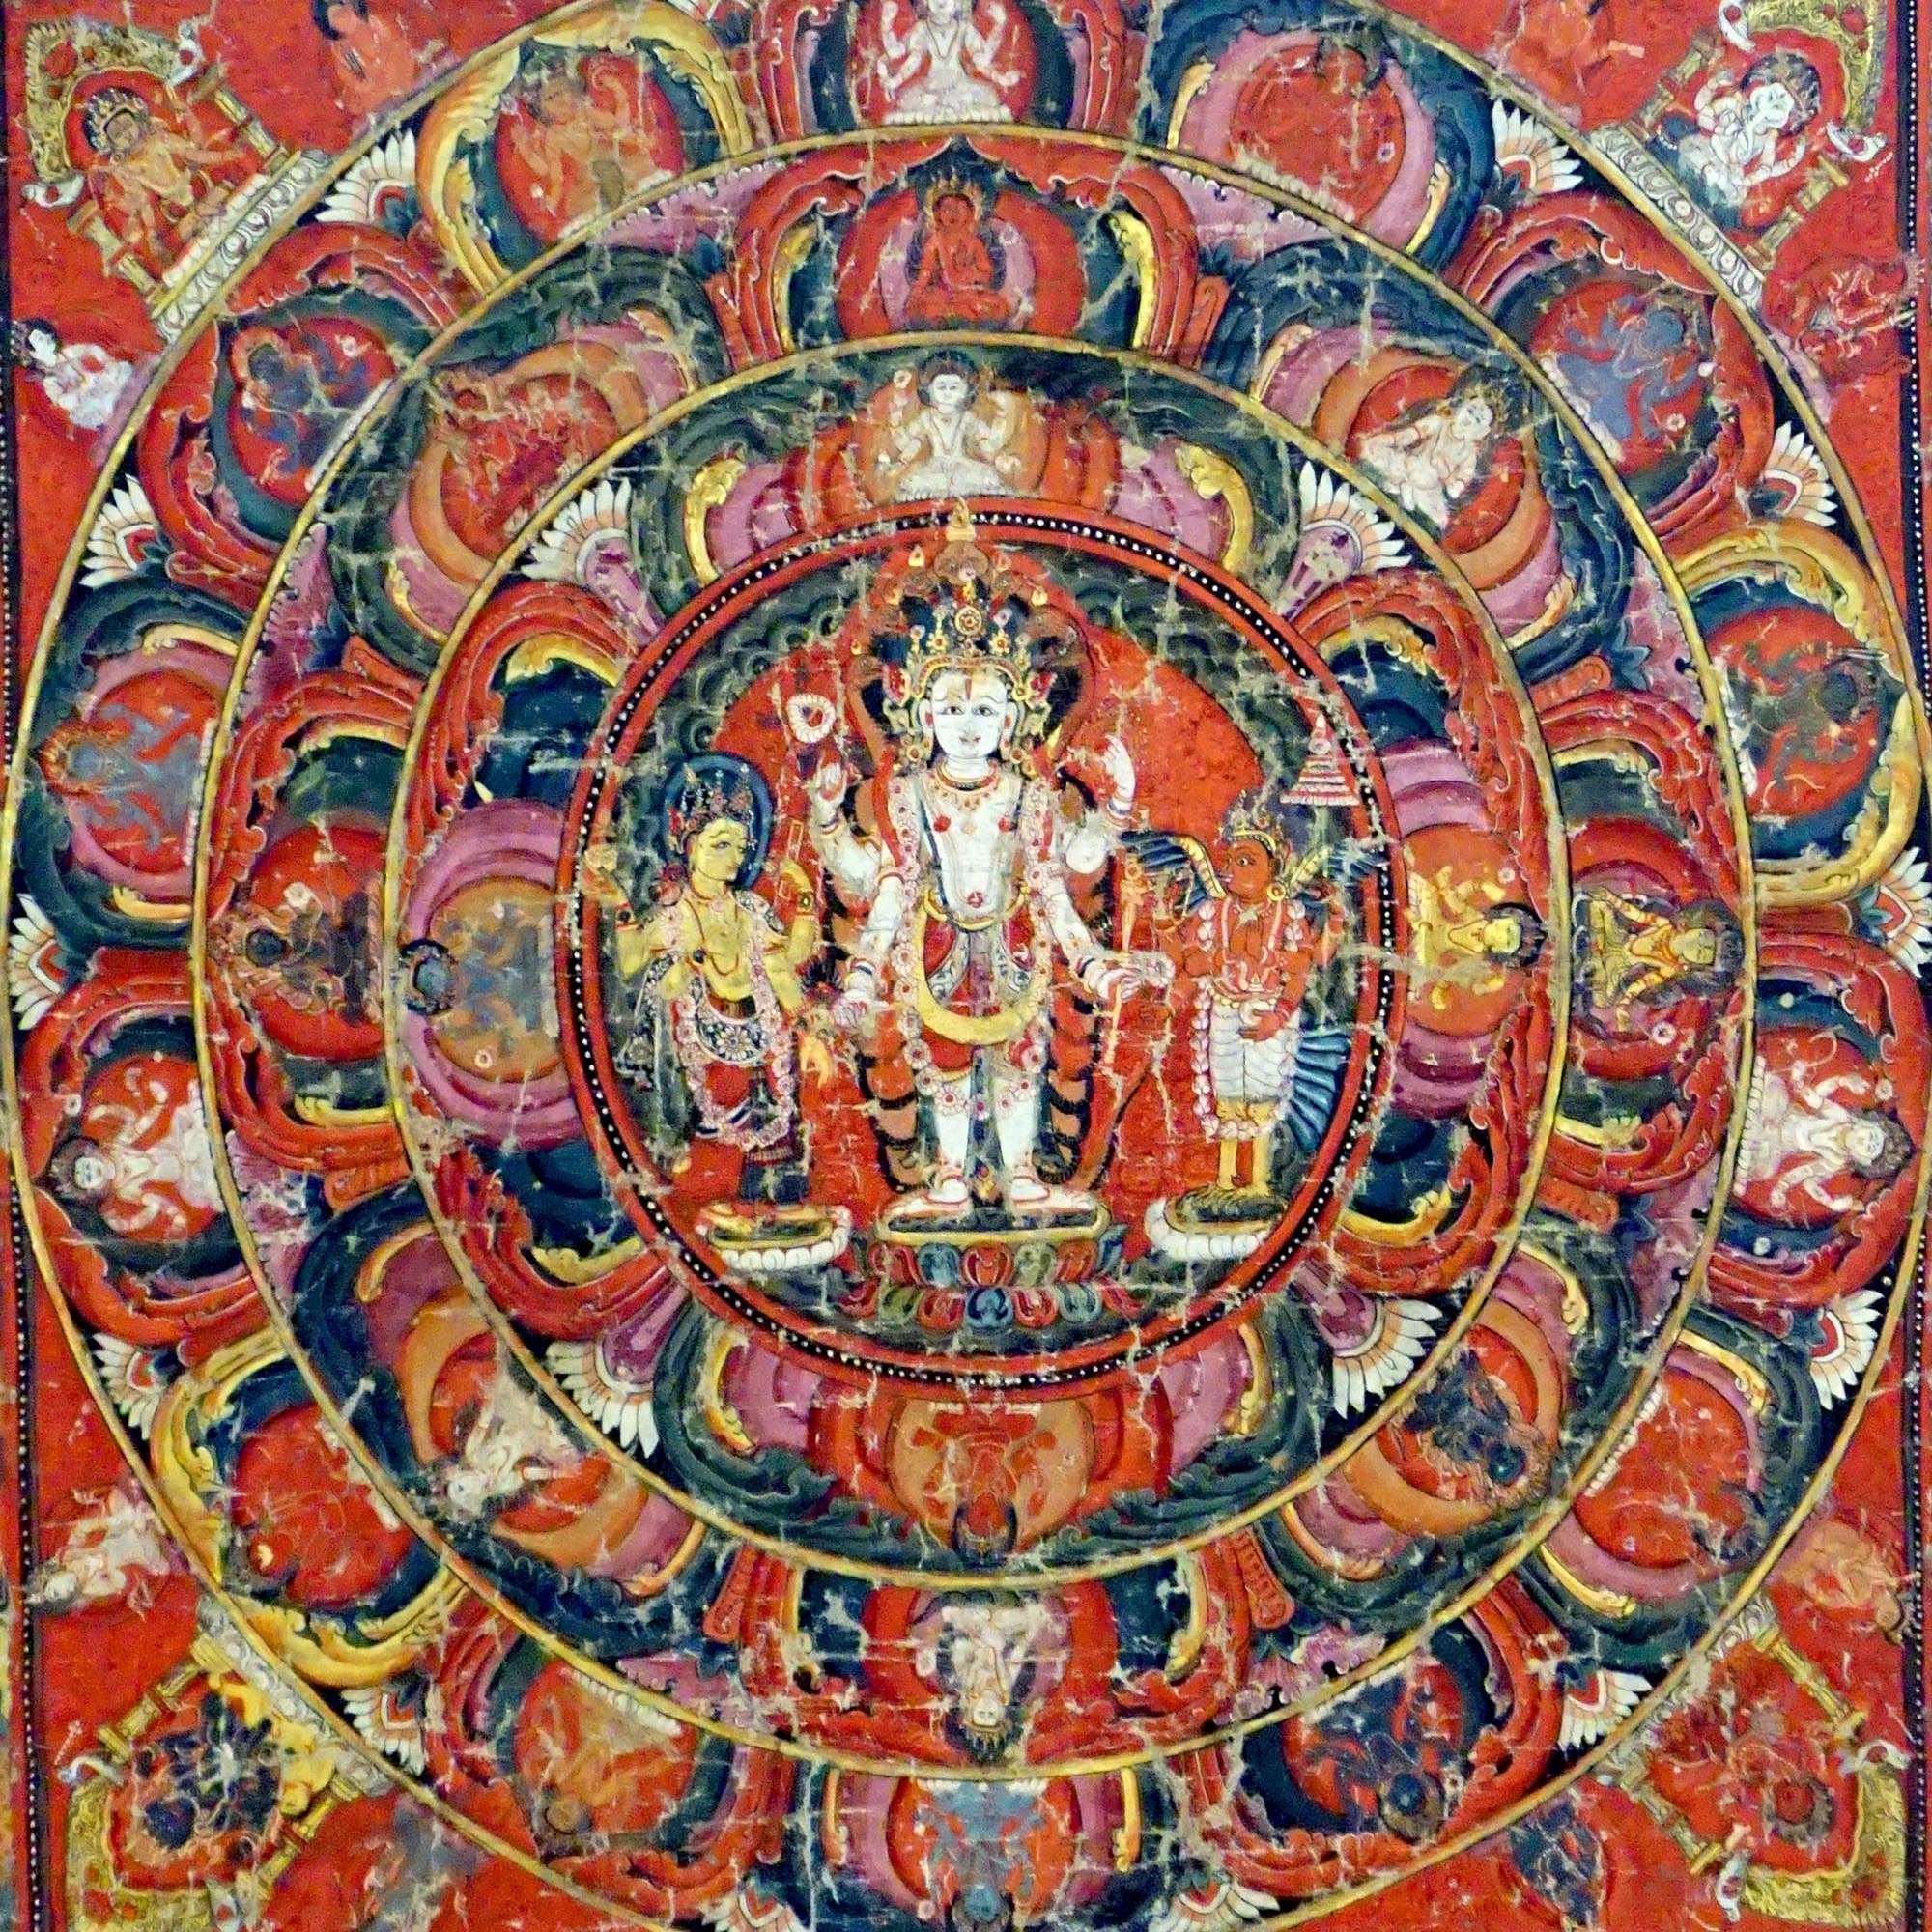 Indra and Garuda Nepali Buddhist Mandala Thangka | Buddhist and Hindu Deity | Nature & Wisdom Mythology Graphic Art T-Shirt - Sacred Surreal